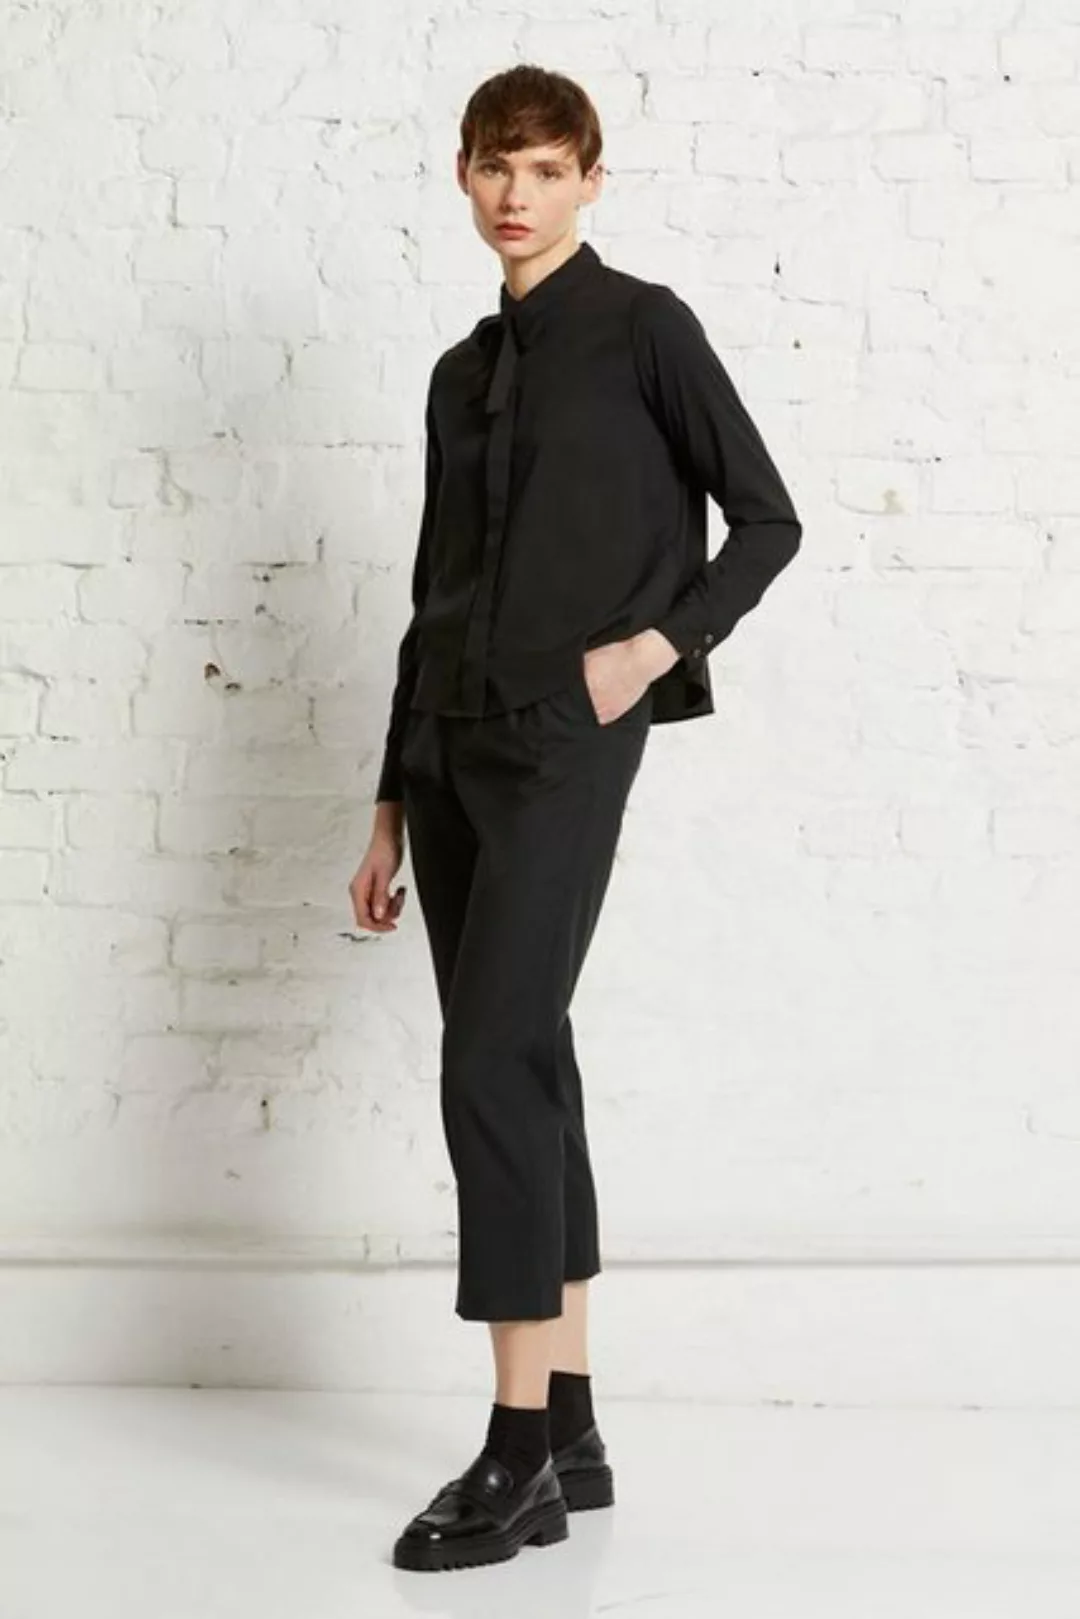 wunderwerk Klassische Bluse TENCEL bow blouse günstig online kaufen